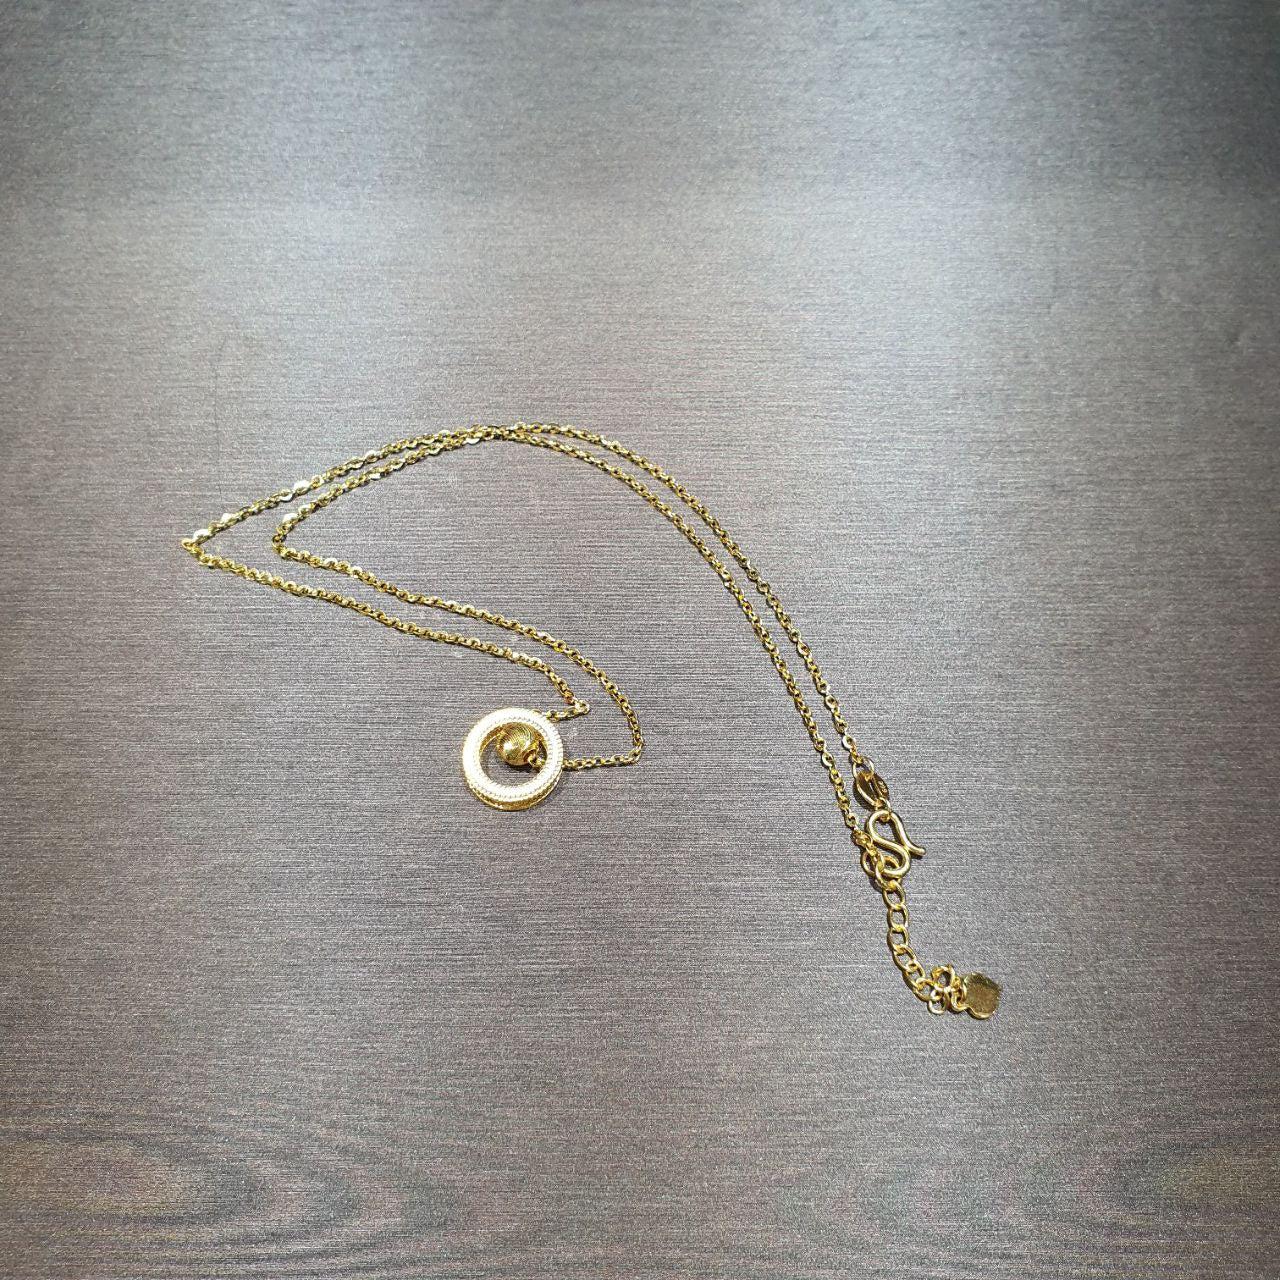 22k / 916 Gold Movable Pendant Necklace-Necklaces-Best Gold Shop